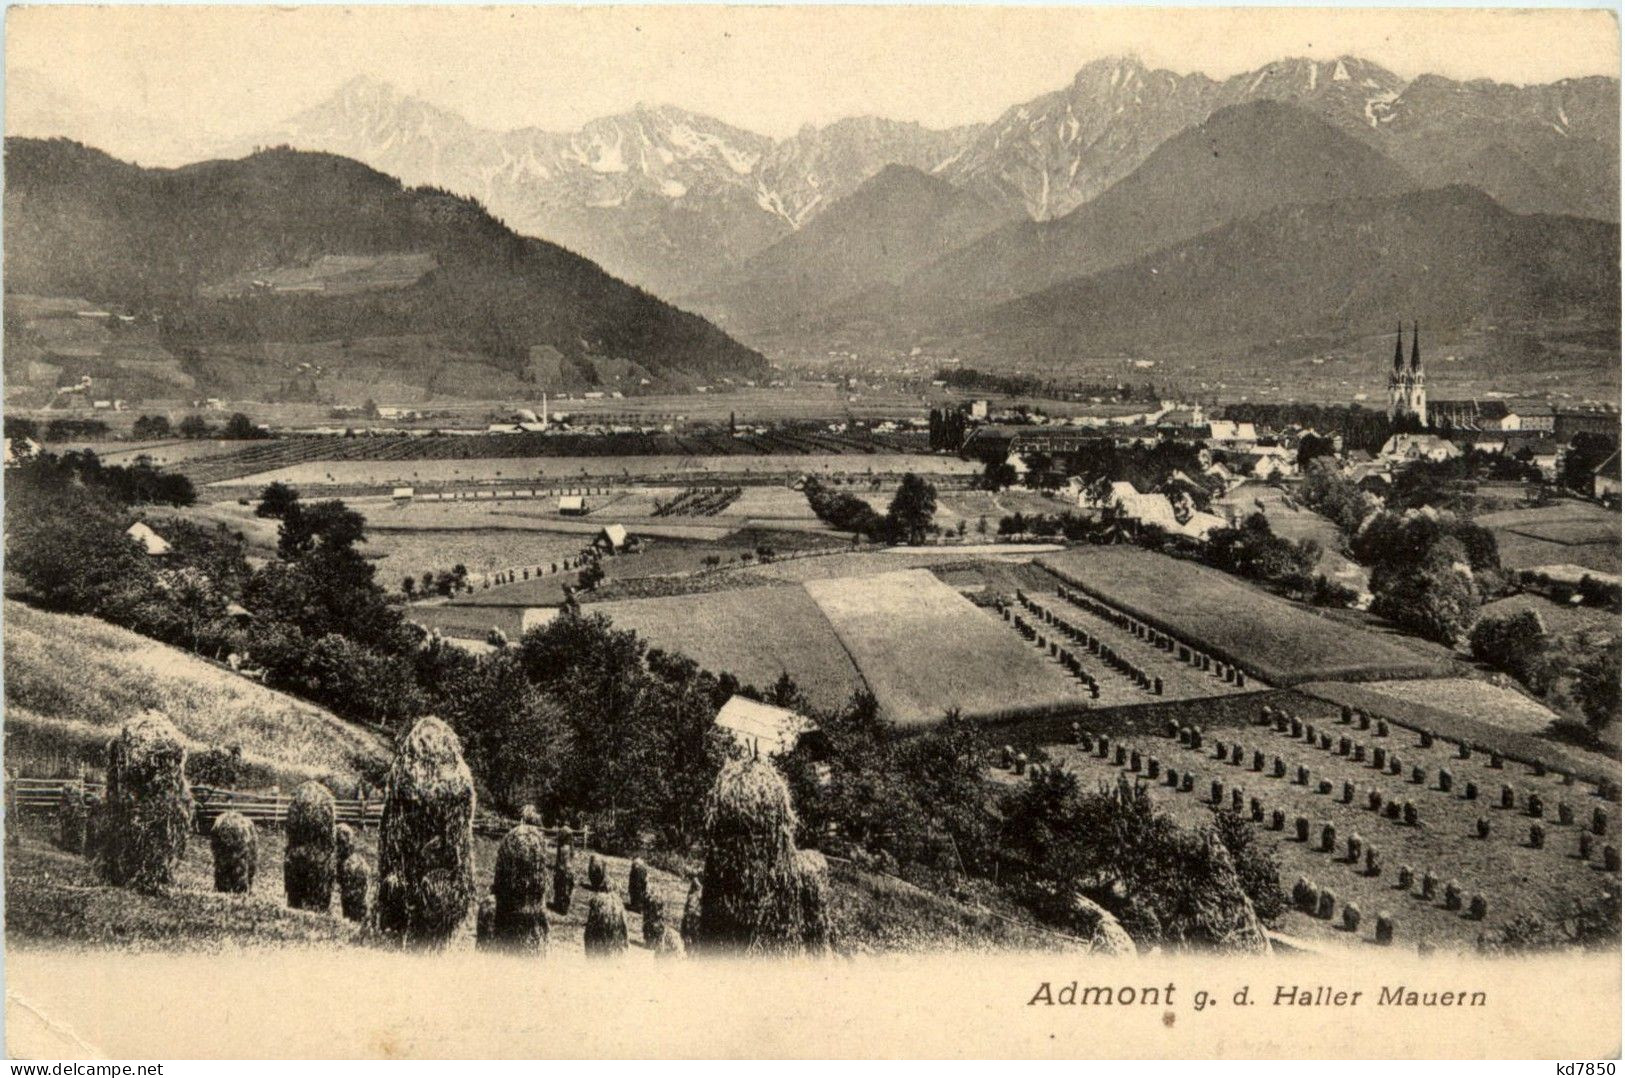 Admont/Steiermark - Admont, G.d. Haller Mauern - Admont